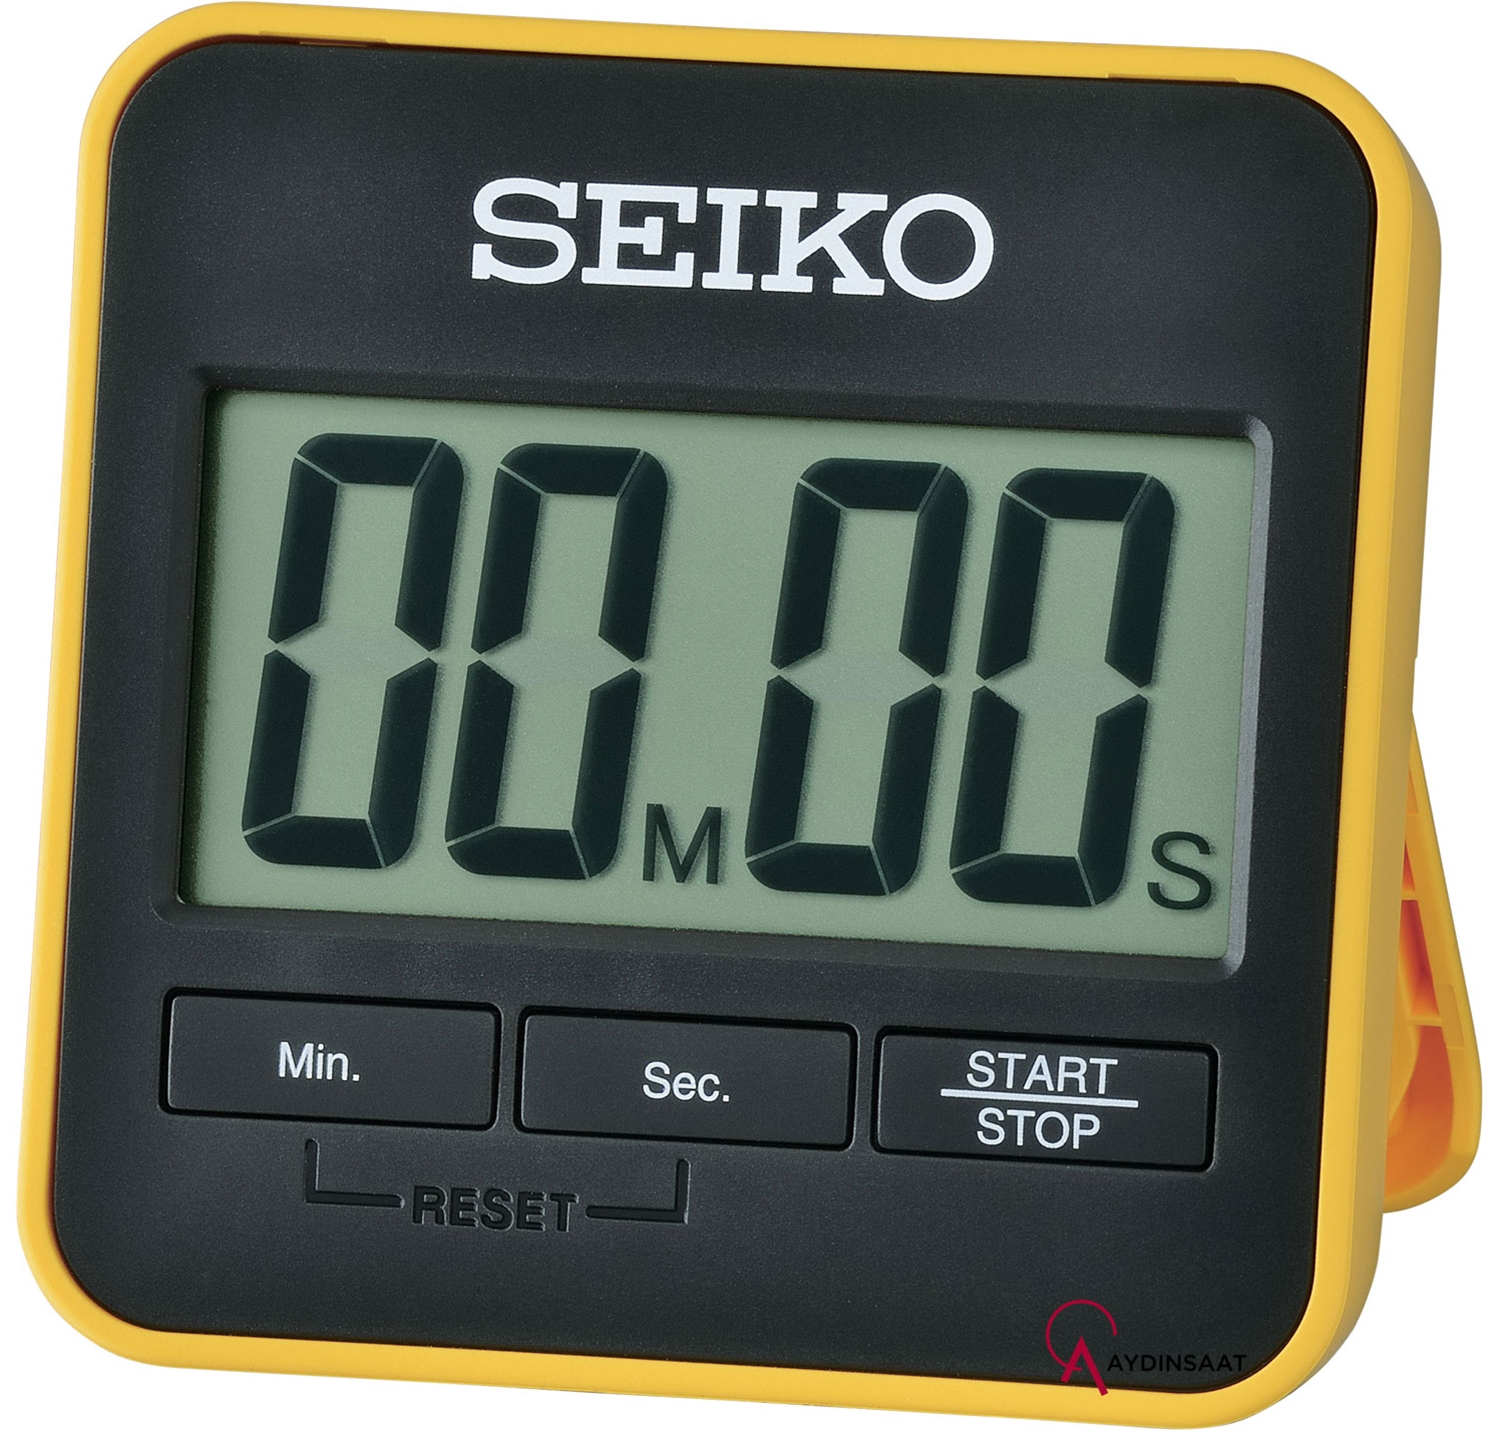 Таймер настольный. Настольные часы Seiko qxe054b. Секундомер электронный Seiko. Seiko qhl073y. Часы Seiko с секундомером.